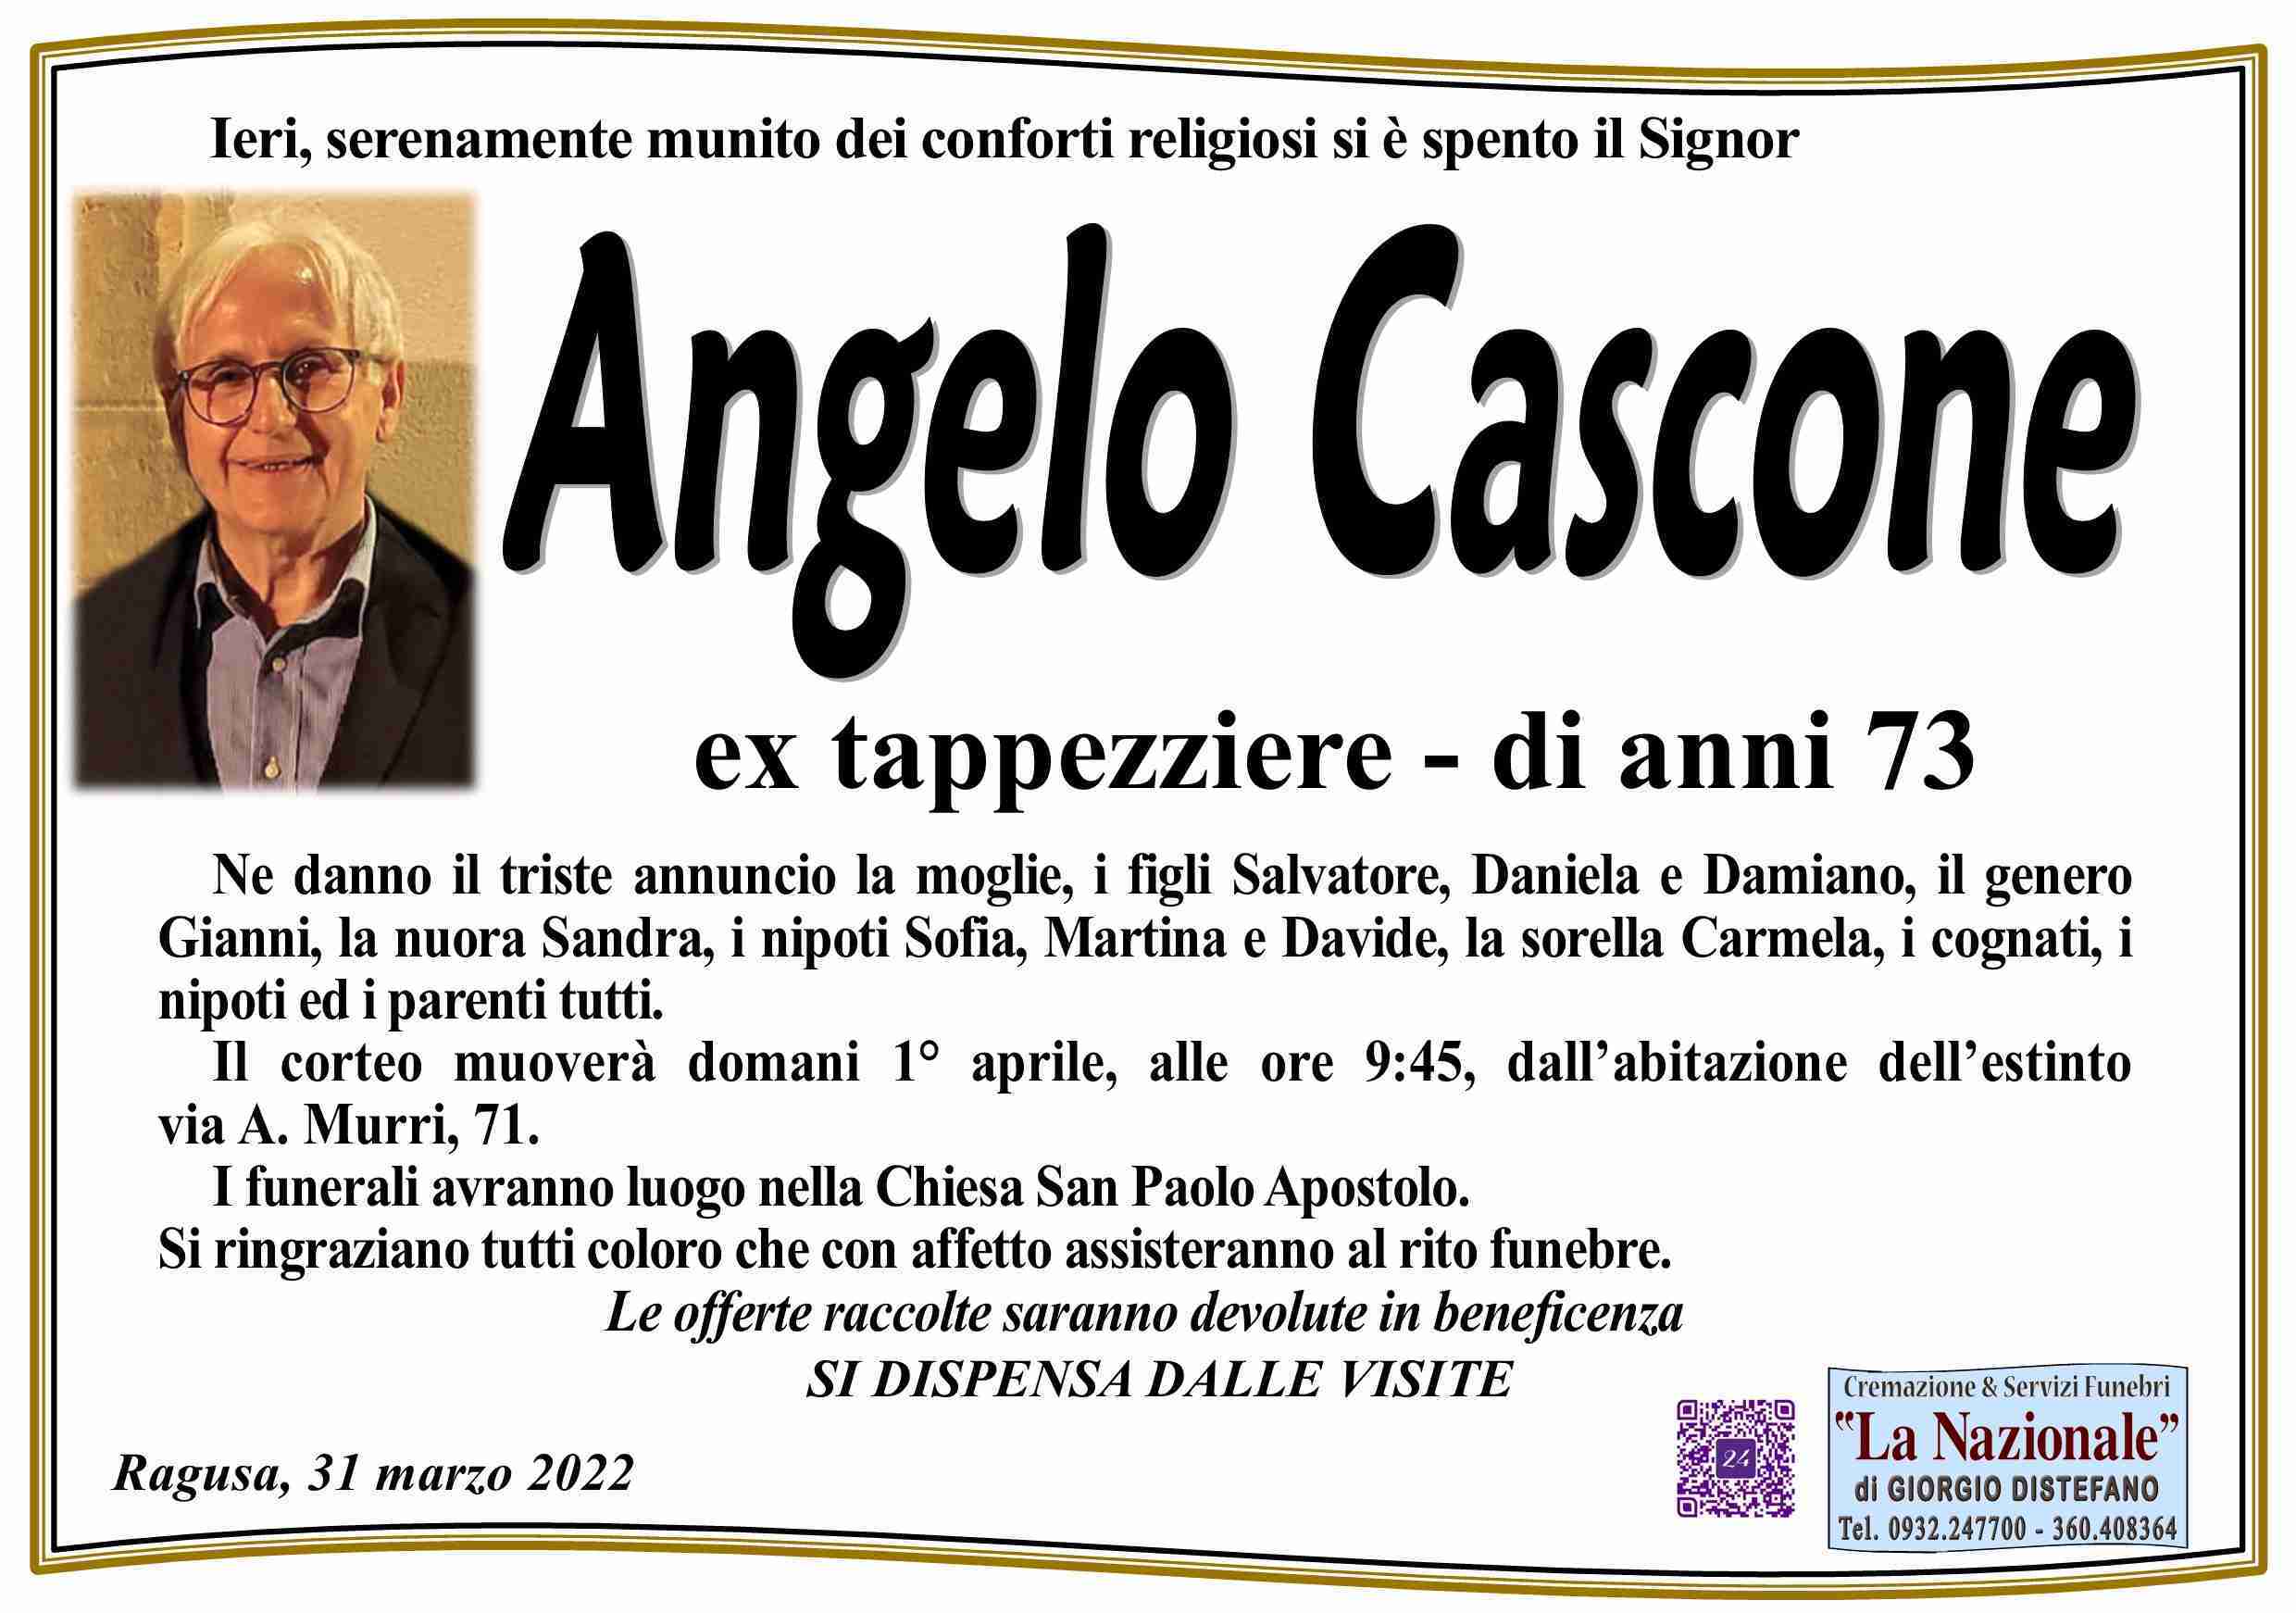 Angelo Cascone